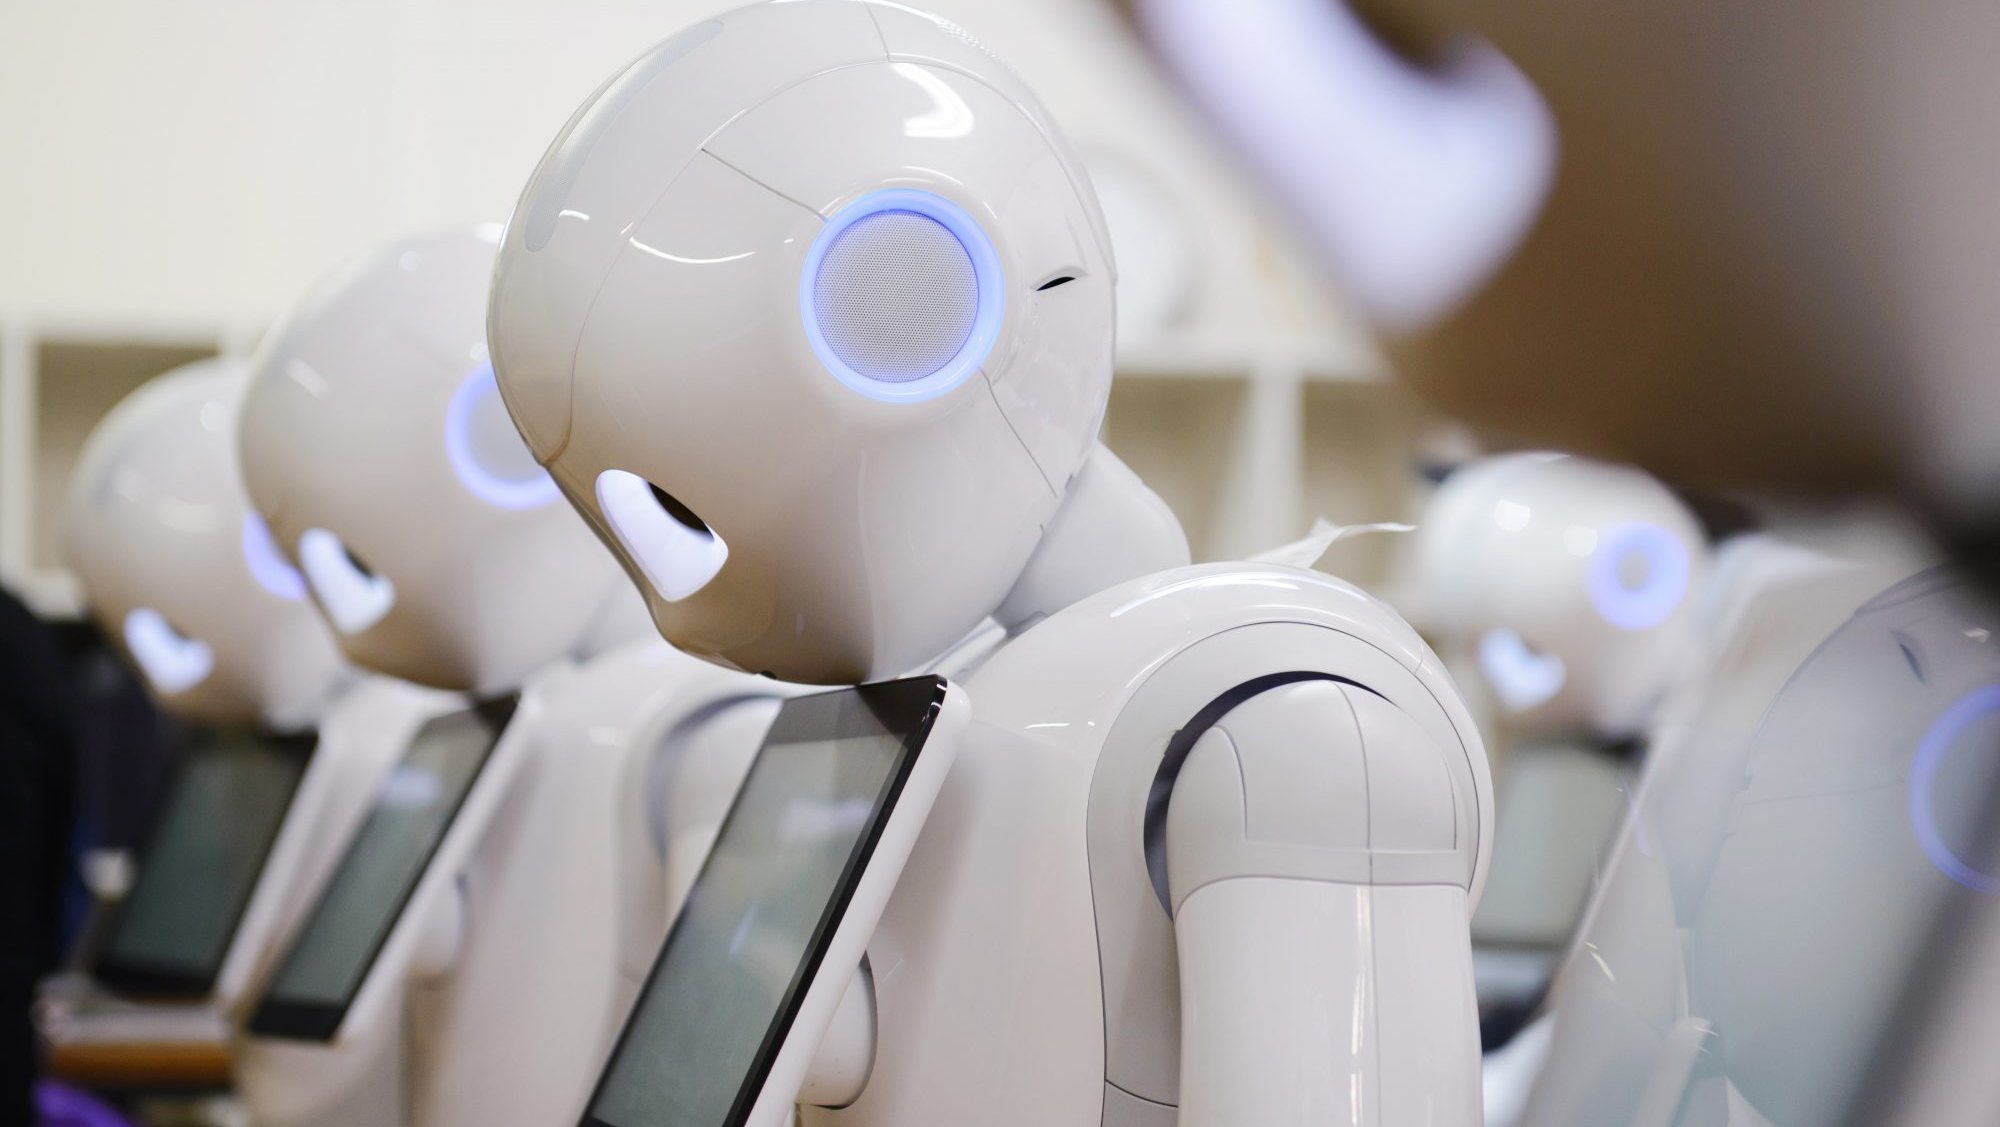 Os robôs Pepper, um dos grandes destaques da unidade de robótica do grupo SoftBank.